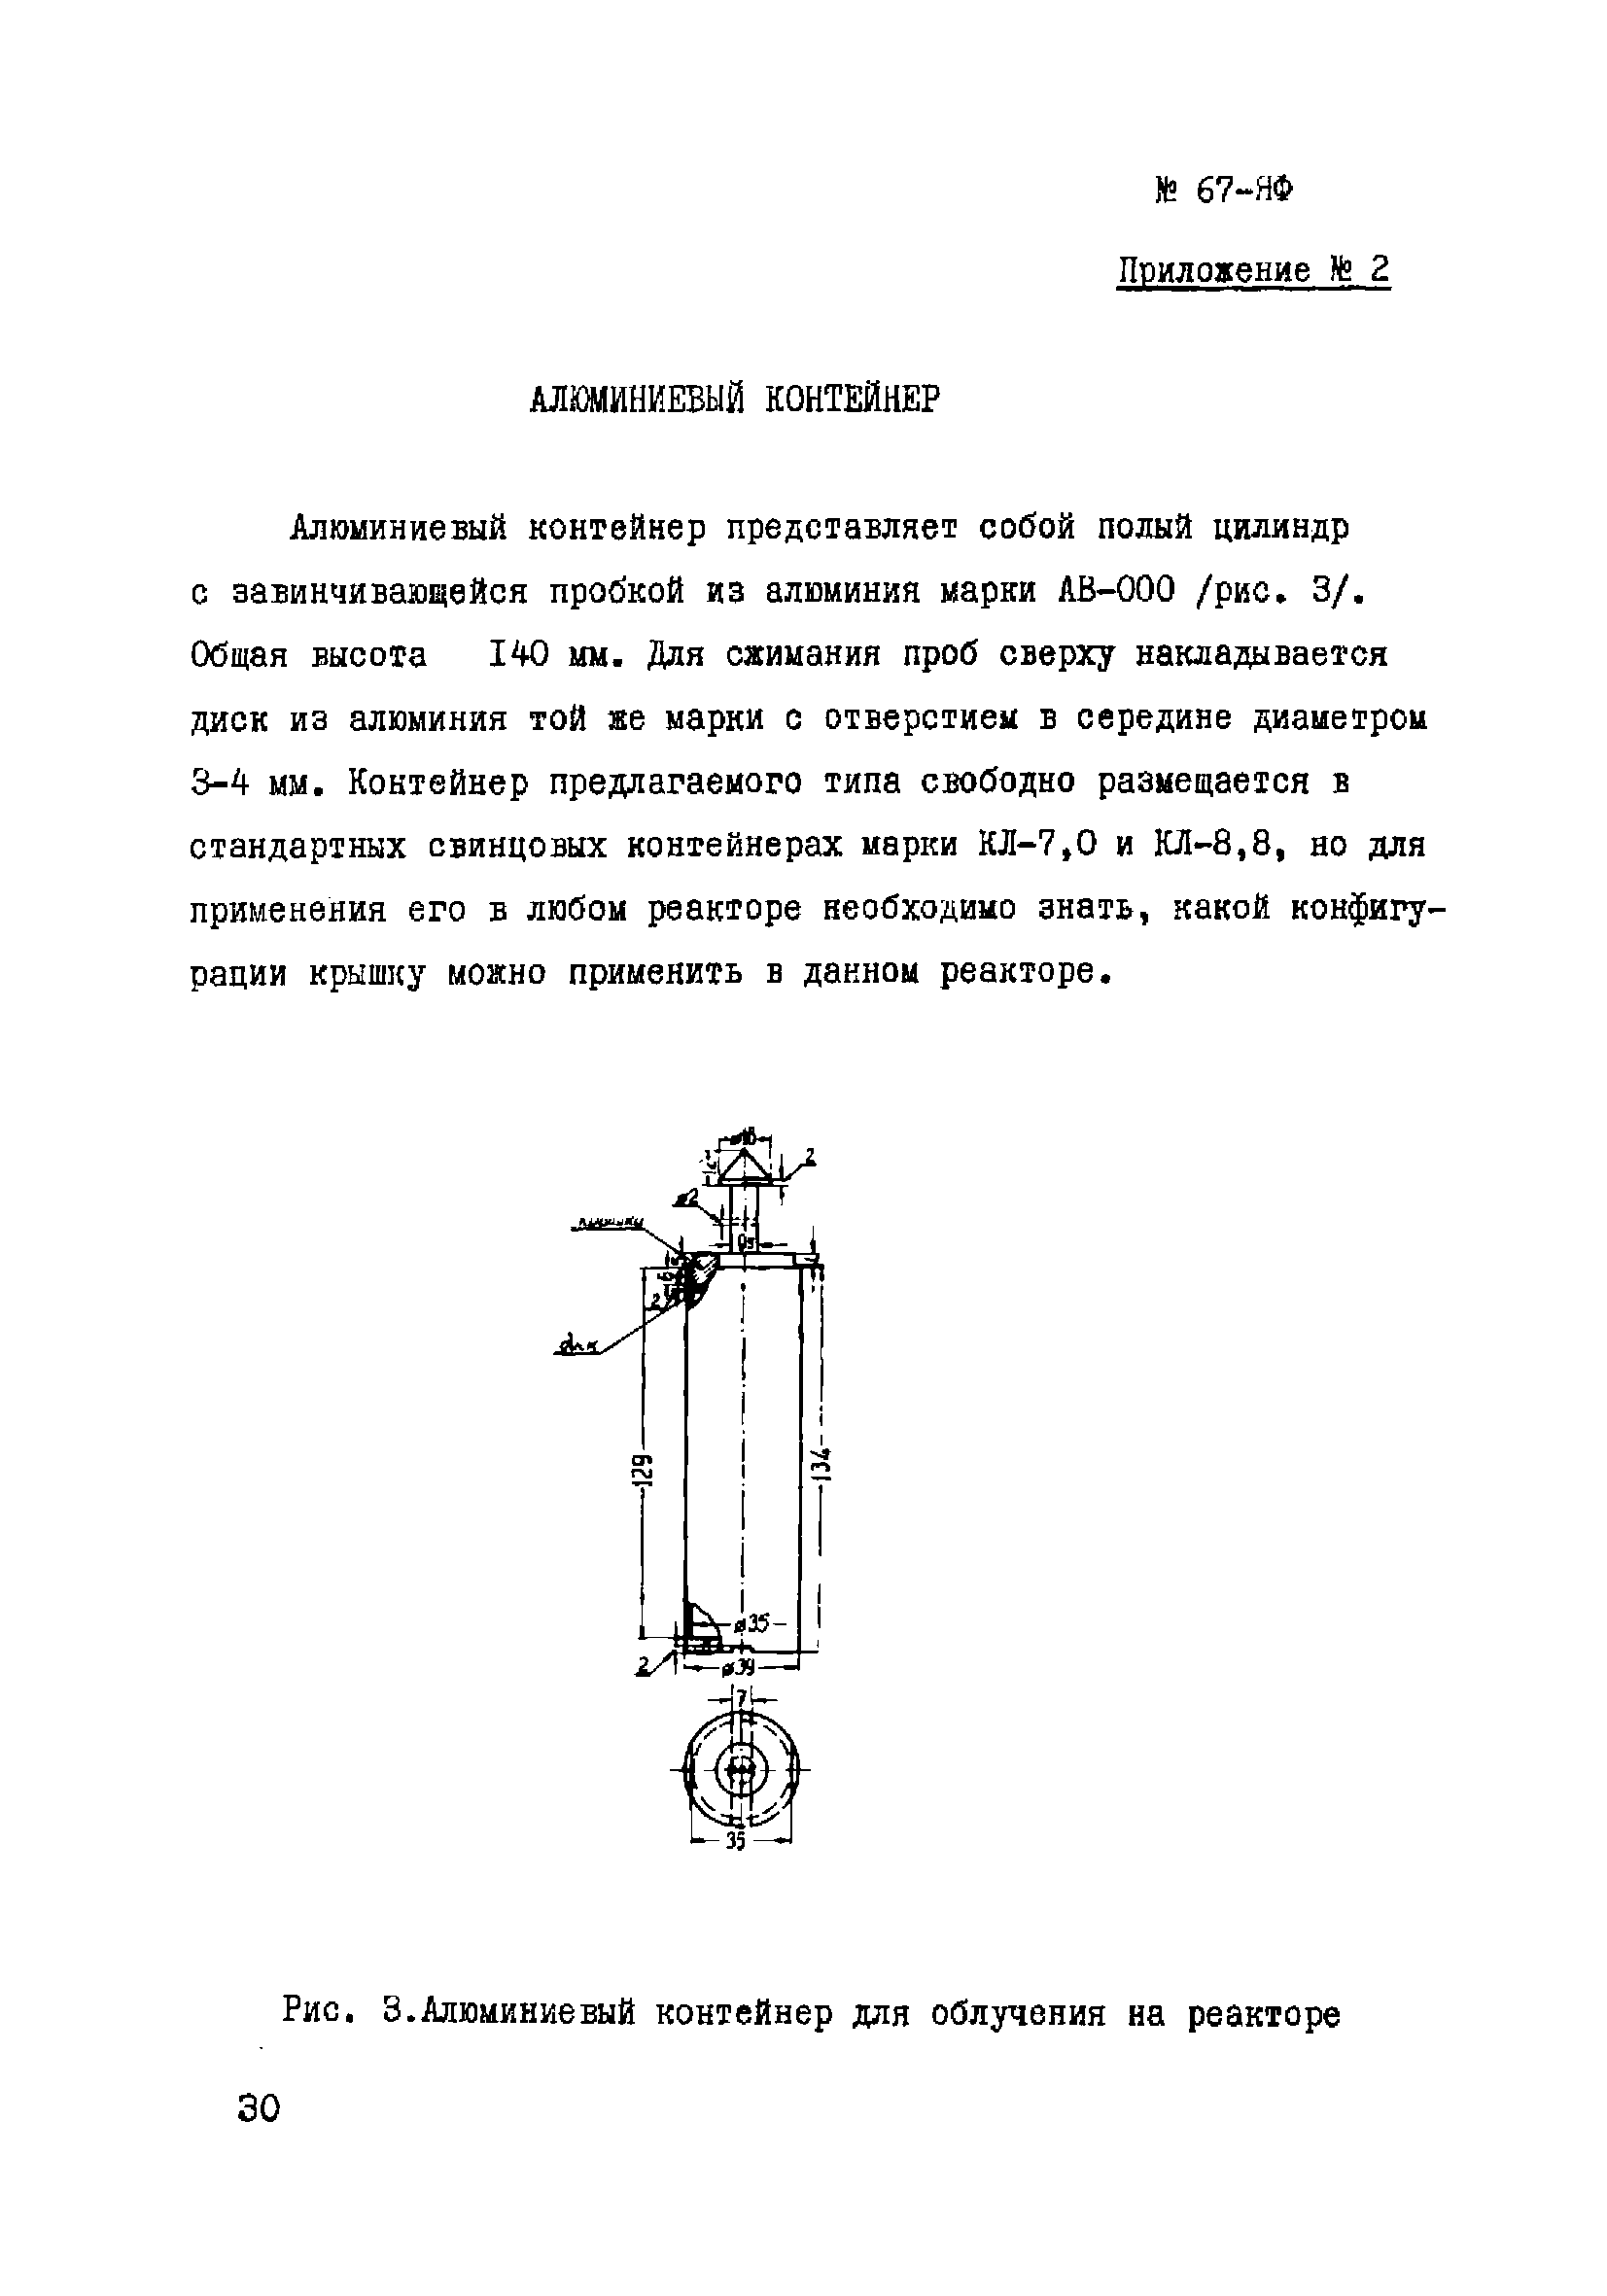 Инструкция НСАМ 67-ЯФ